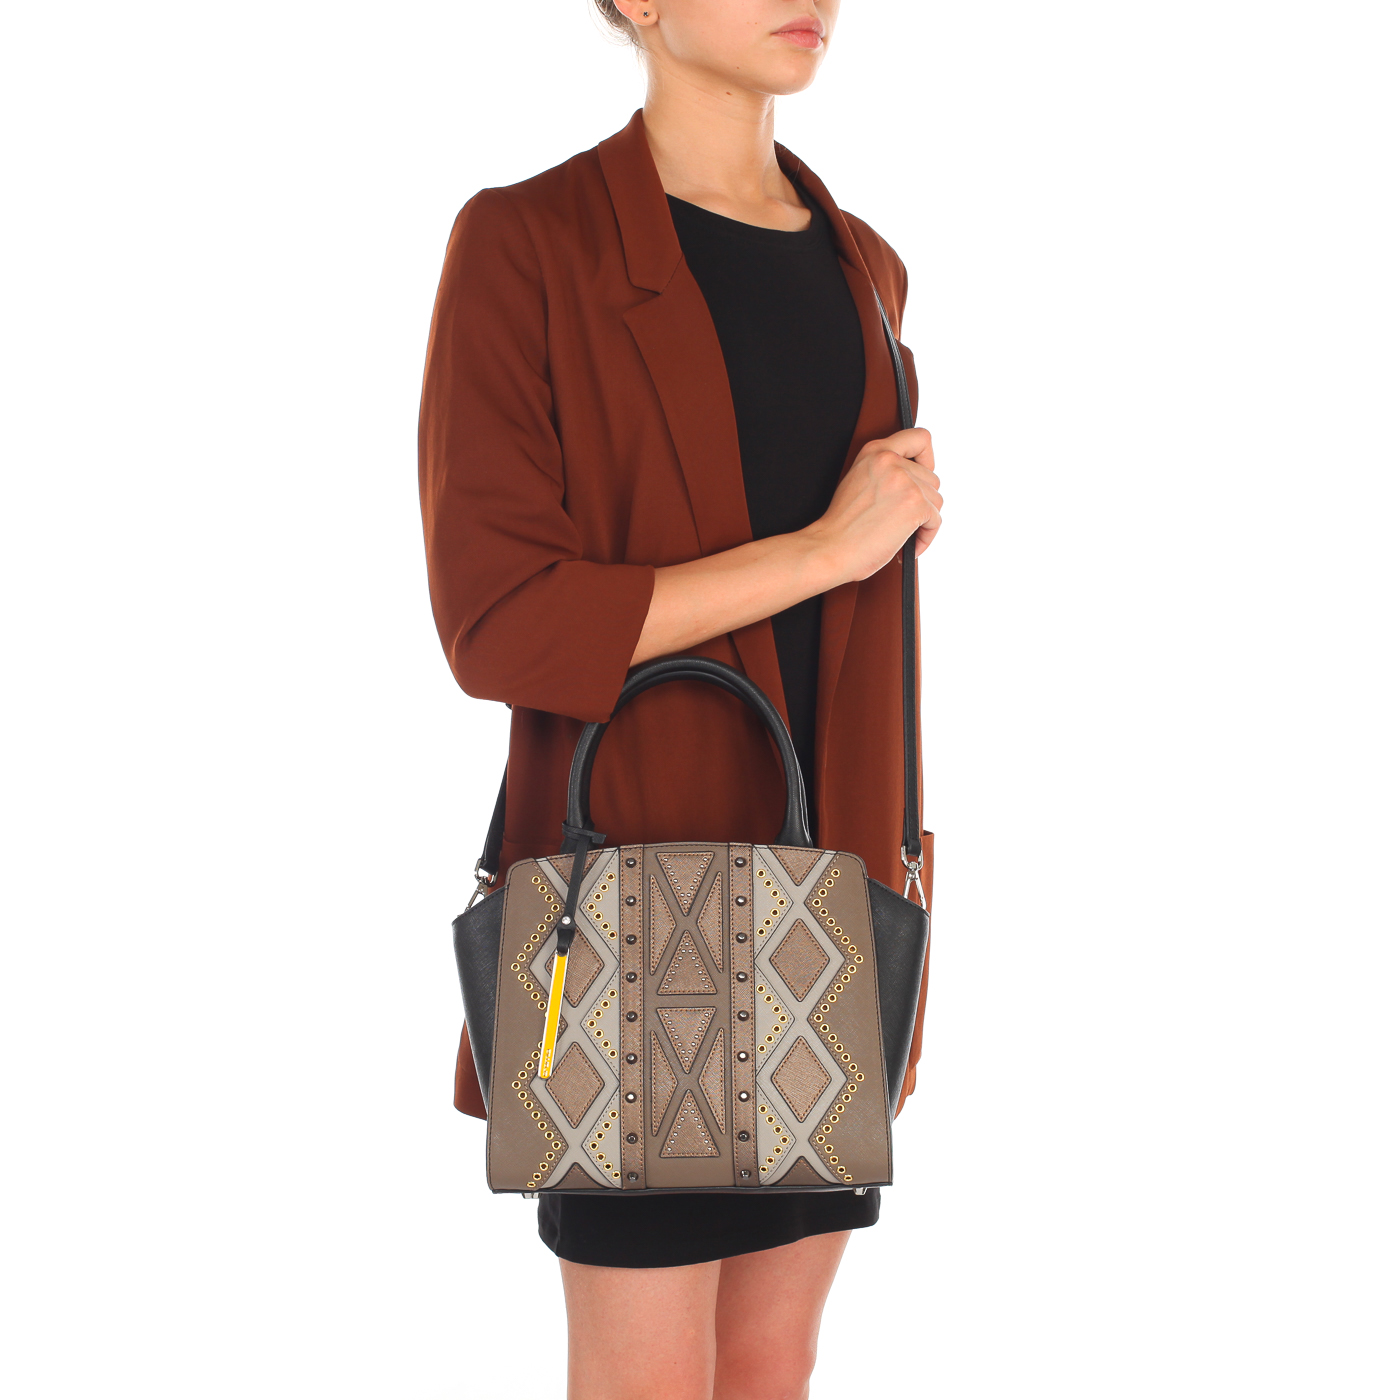 Женская сумка из сафьяновой кожи с плечевым ремешком Cromia Perla